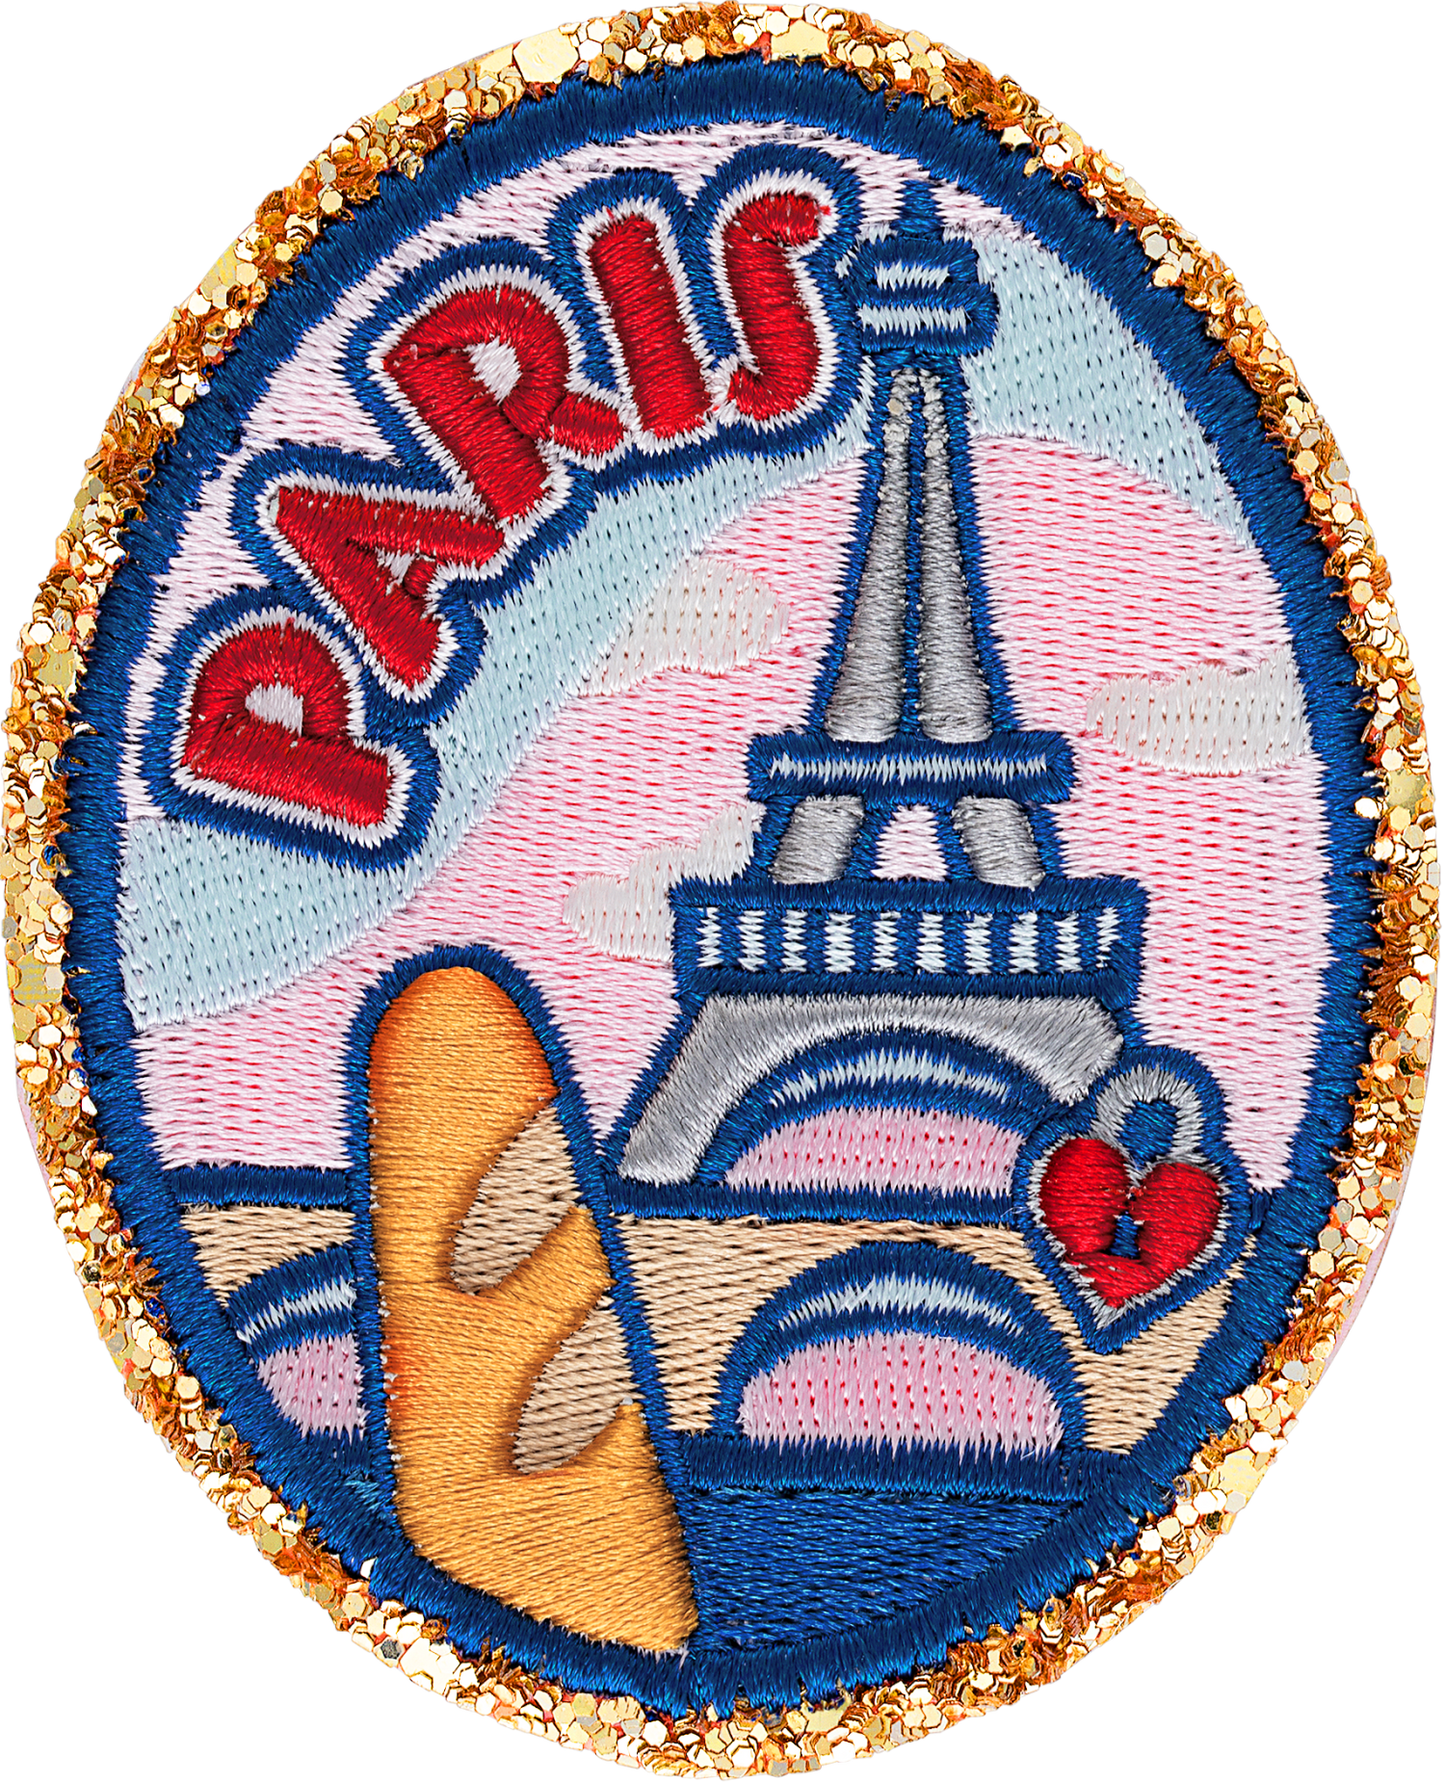 Paris Patch